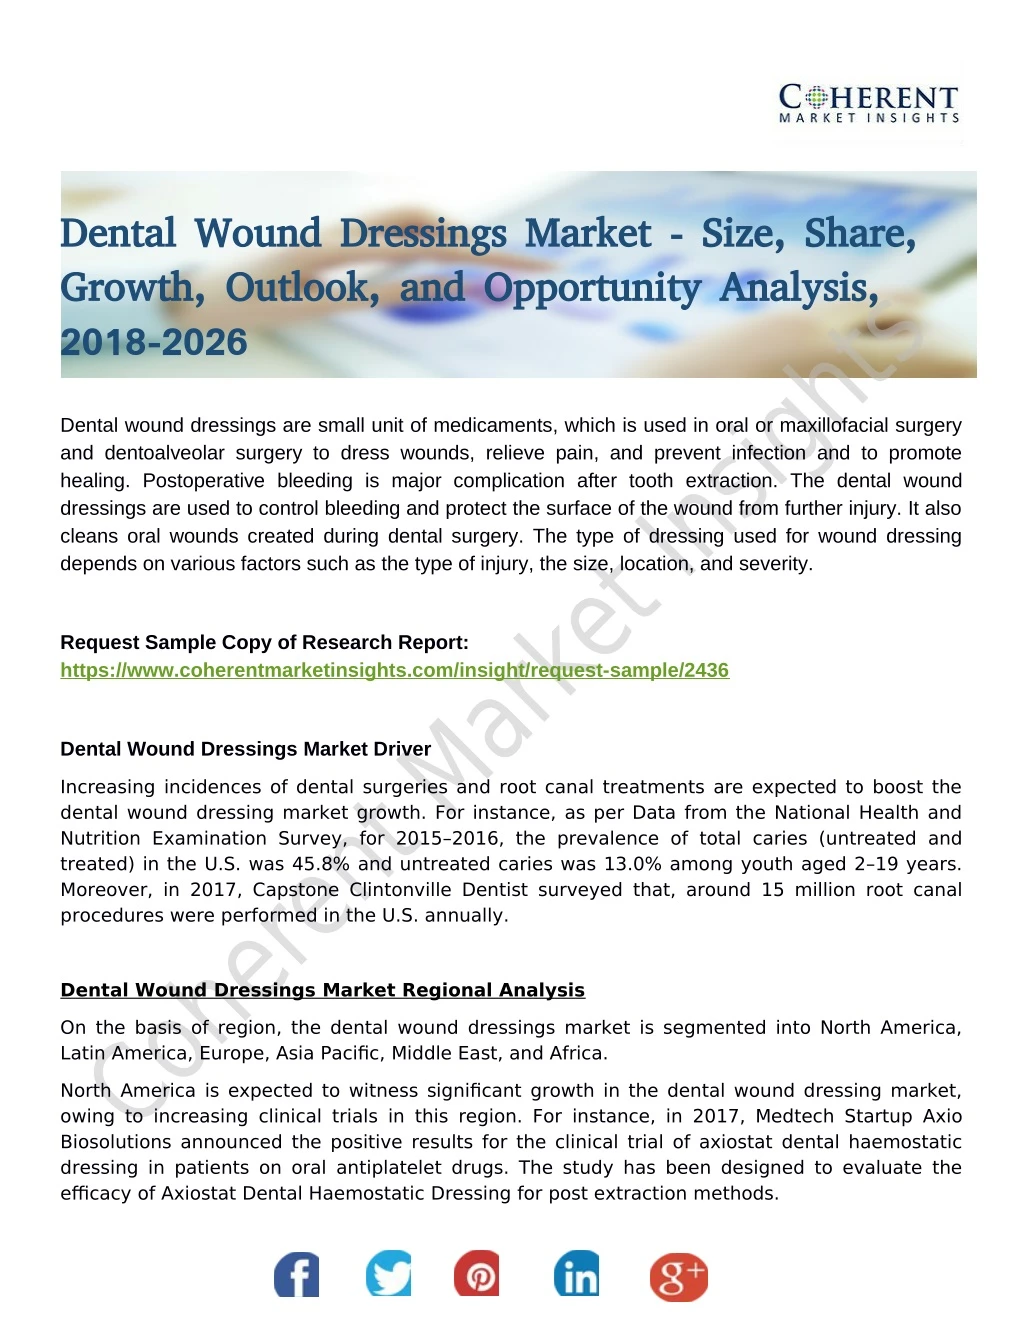 dental wound dressings market size share dental